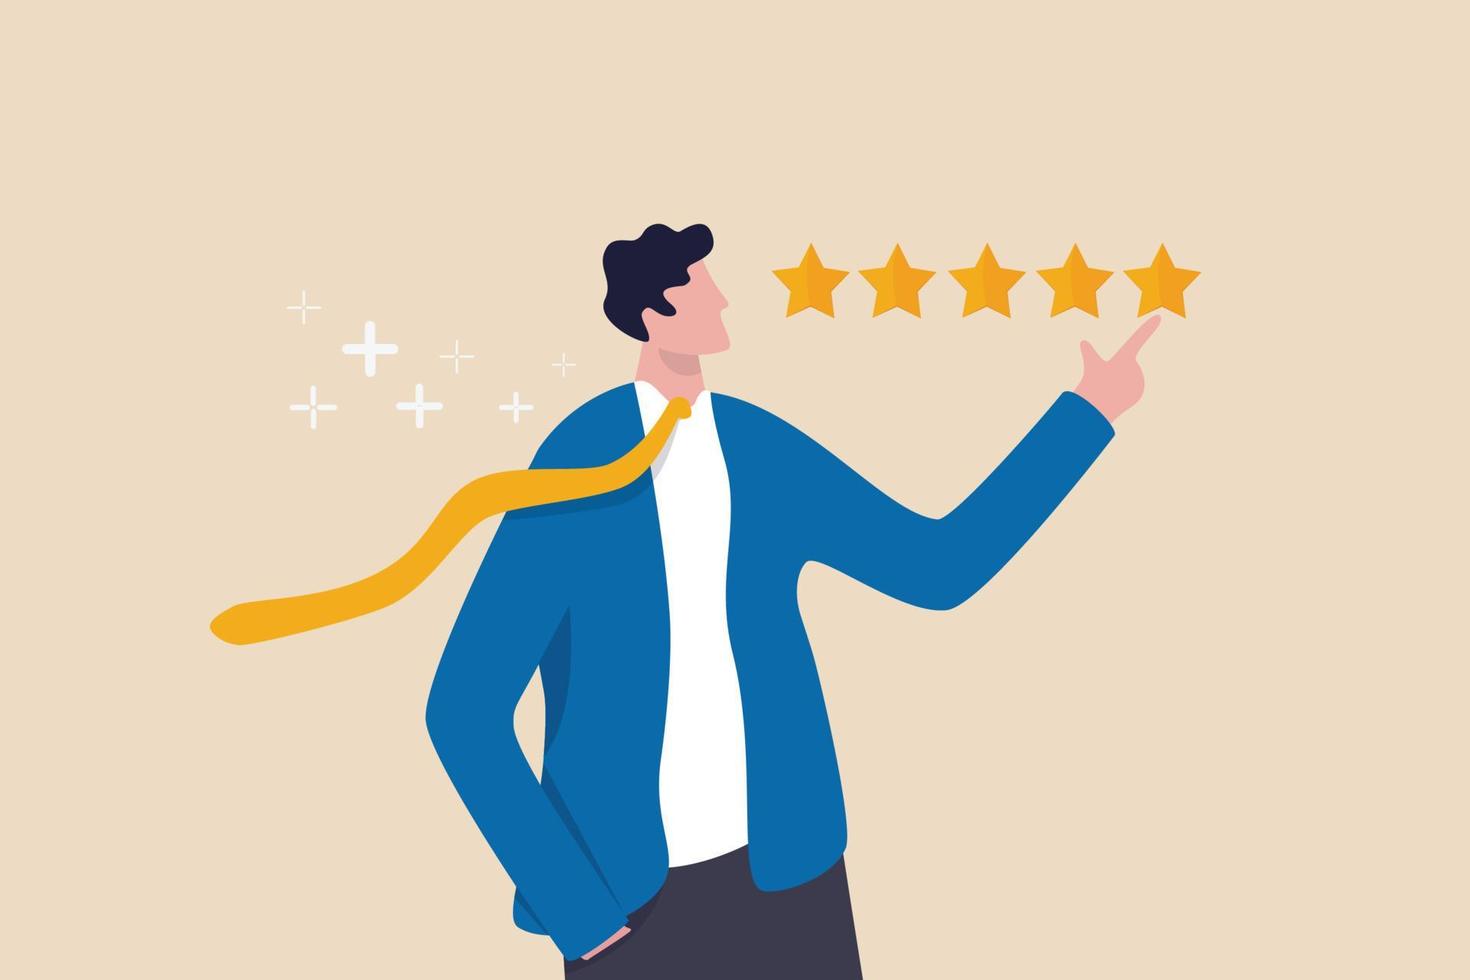 feedback van klanten 5 sterren rating, beste kwaliteit, excellentie high performance evaluatie, positieve ranking of zakelijke reputatie en tevredenheidsconcept, vertrouwen zakenman die 5 sterren rating geeft. vector